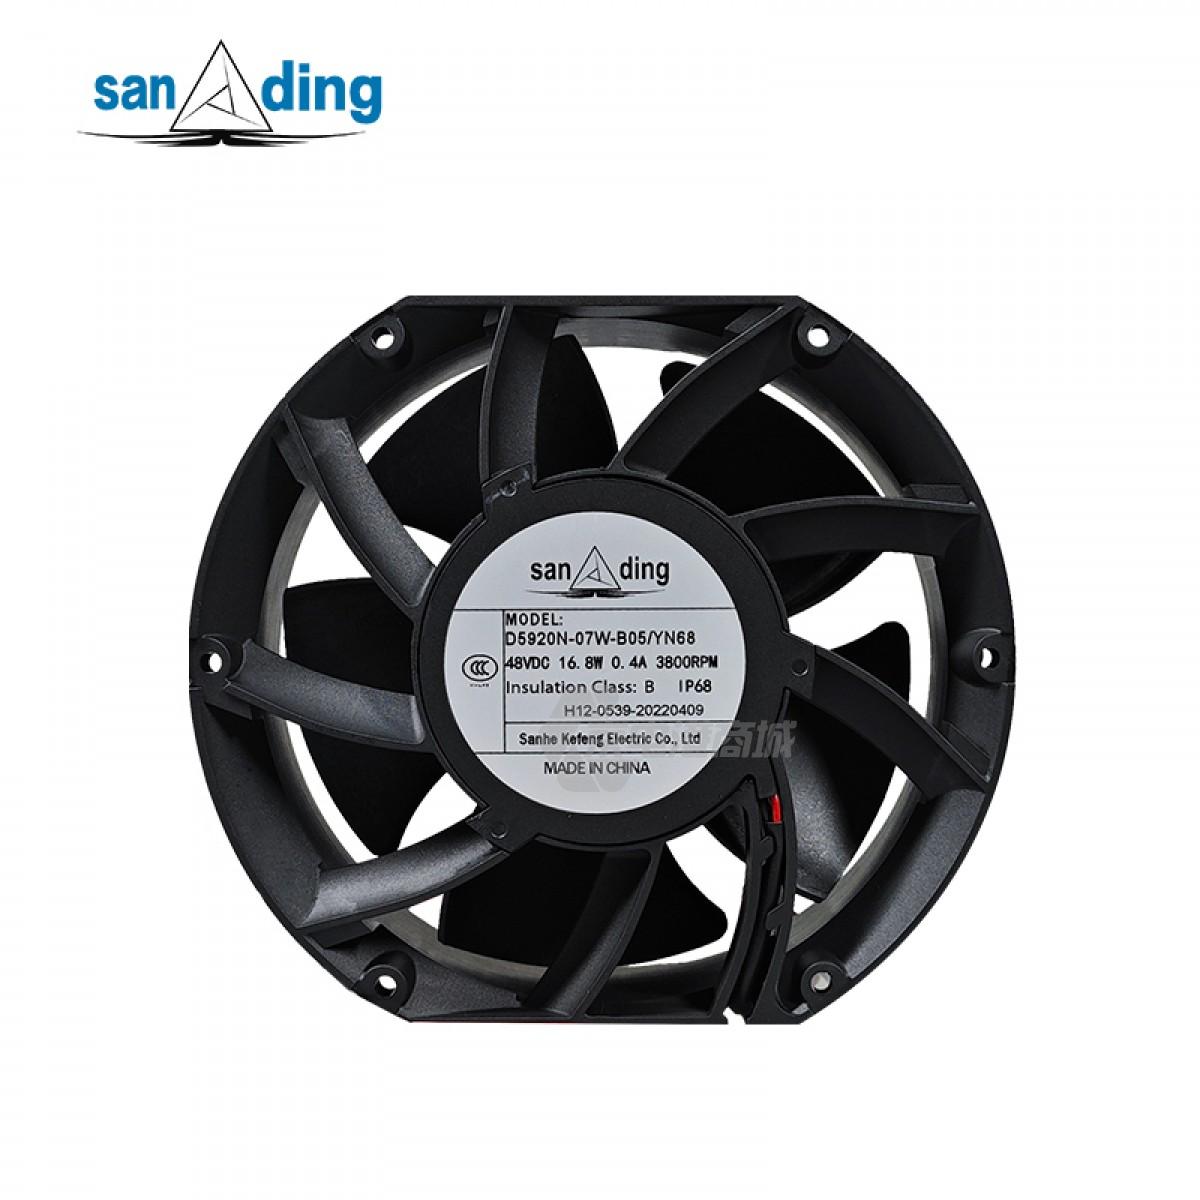 sanding D5920N-07W-B04 48VDC 0.27A 12.96W 2700rpm 195CFM 172x150x51mm 2-wire DC axial fan